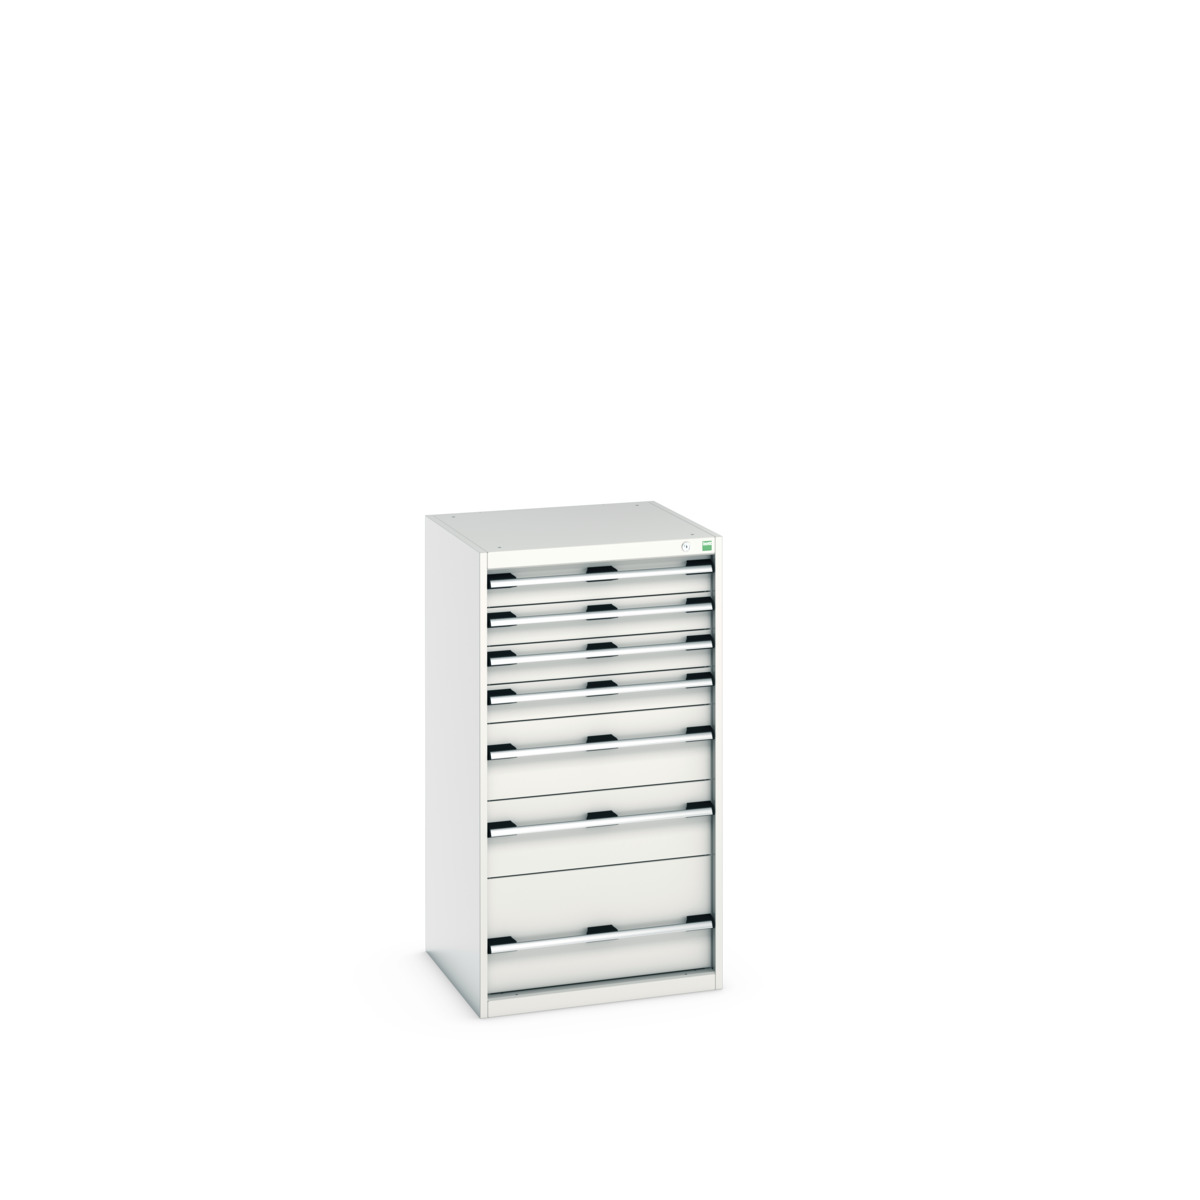 40019069.16V - cubio drawer cabinet